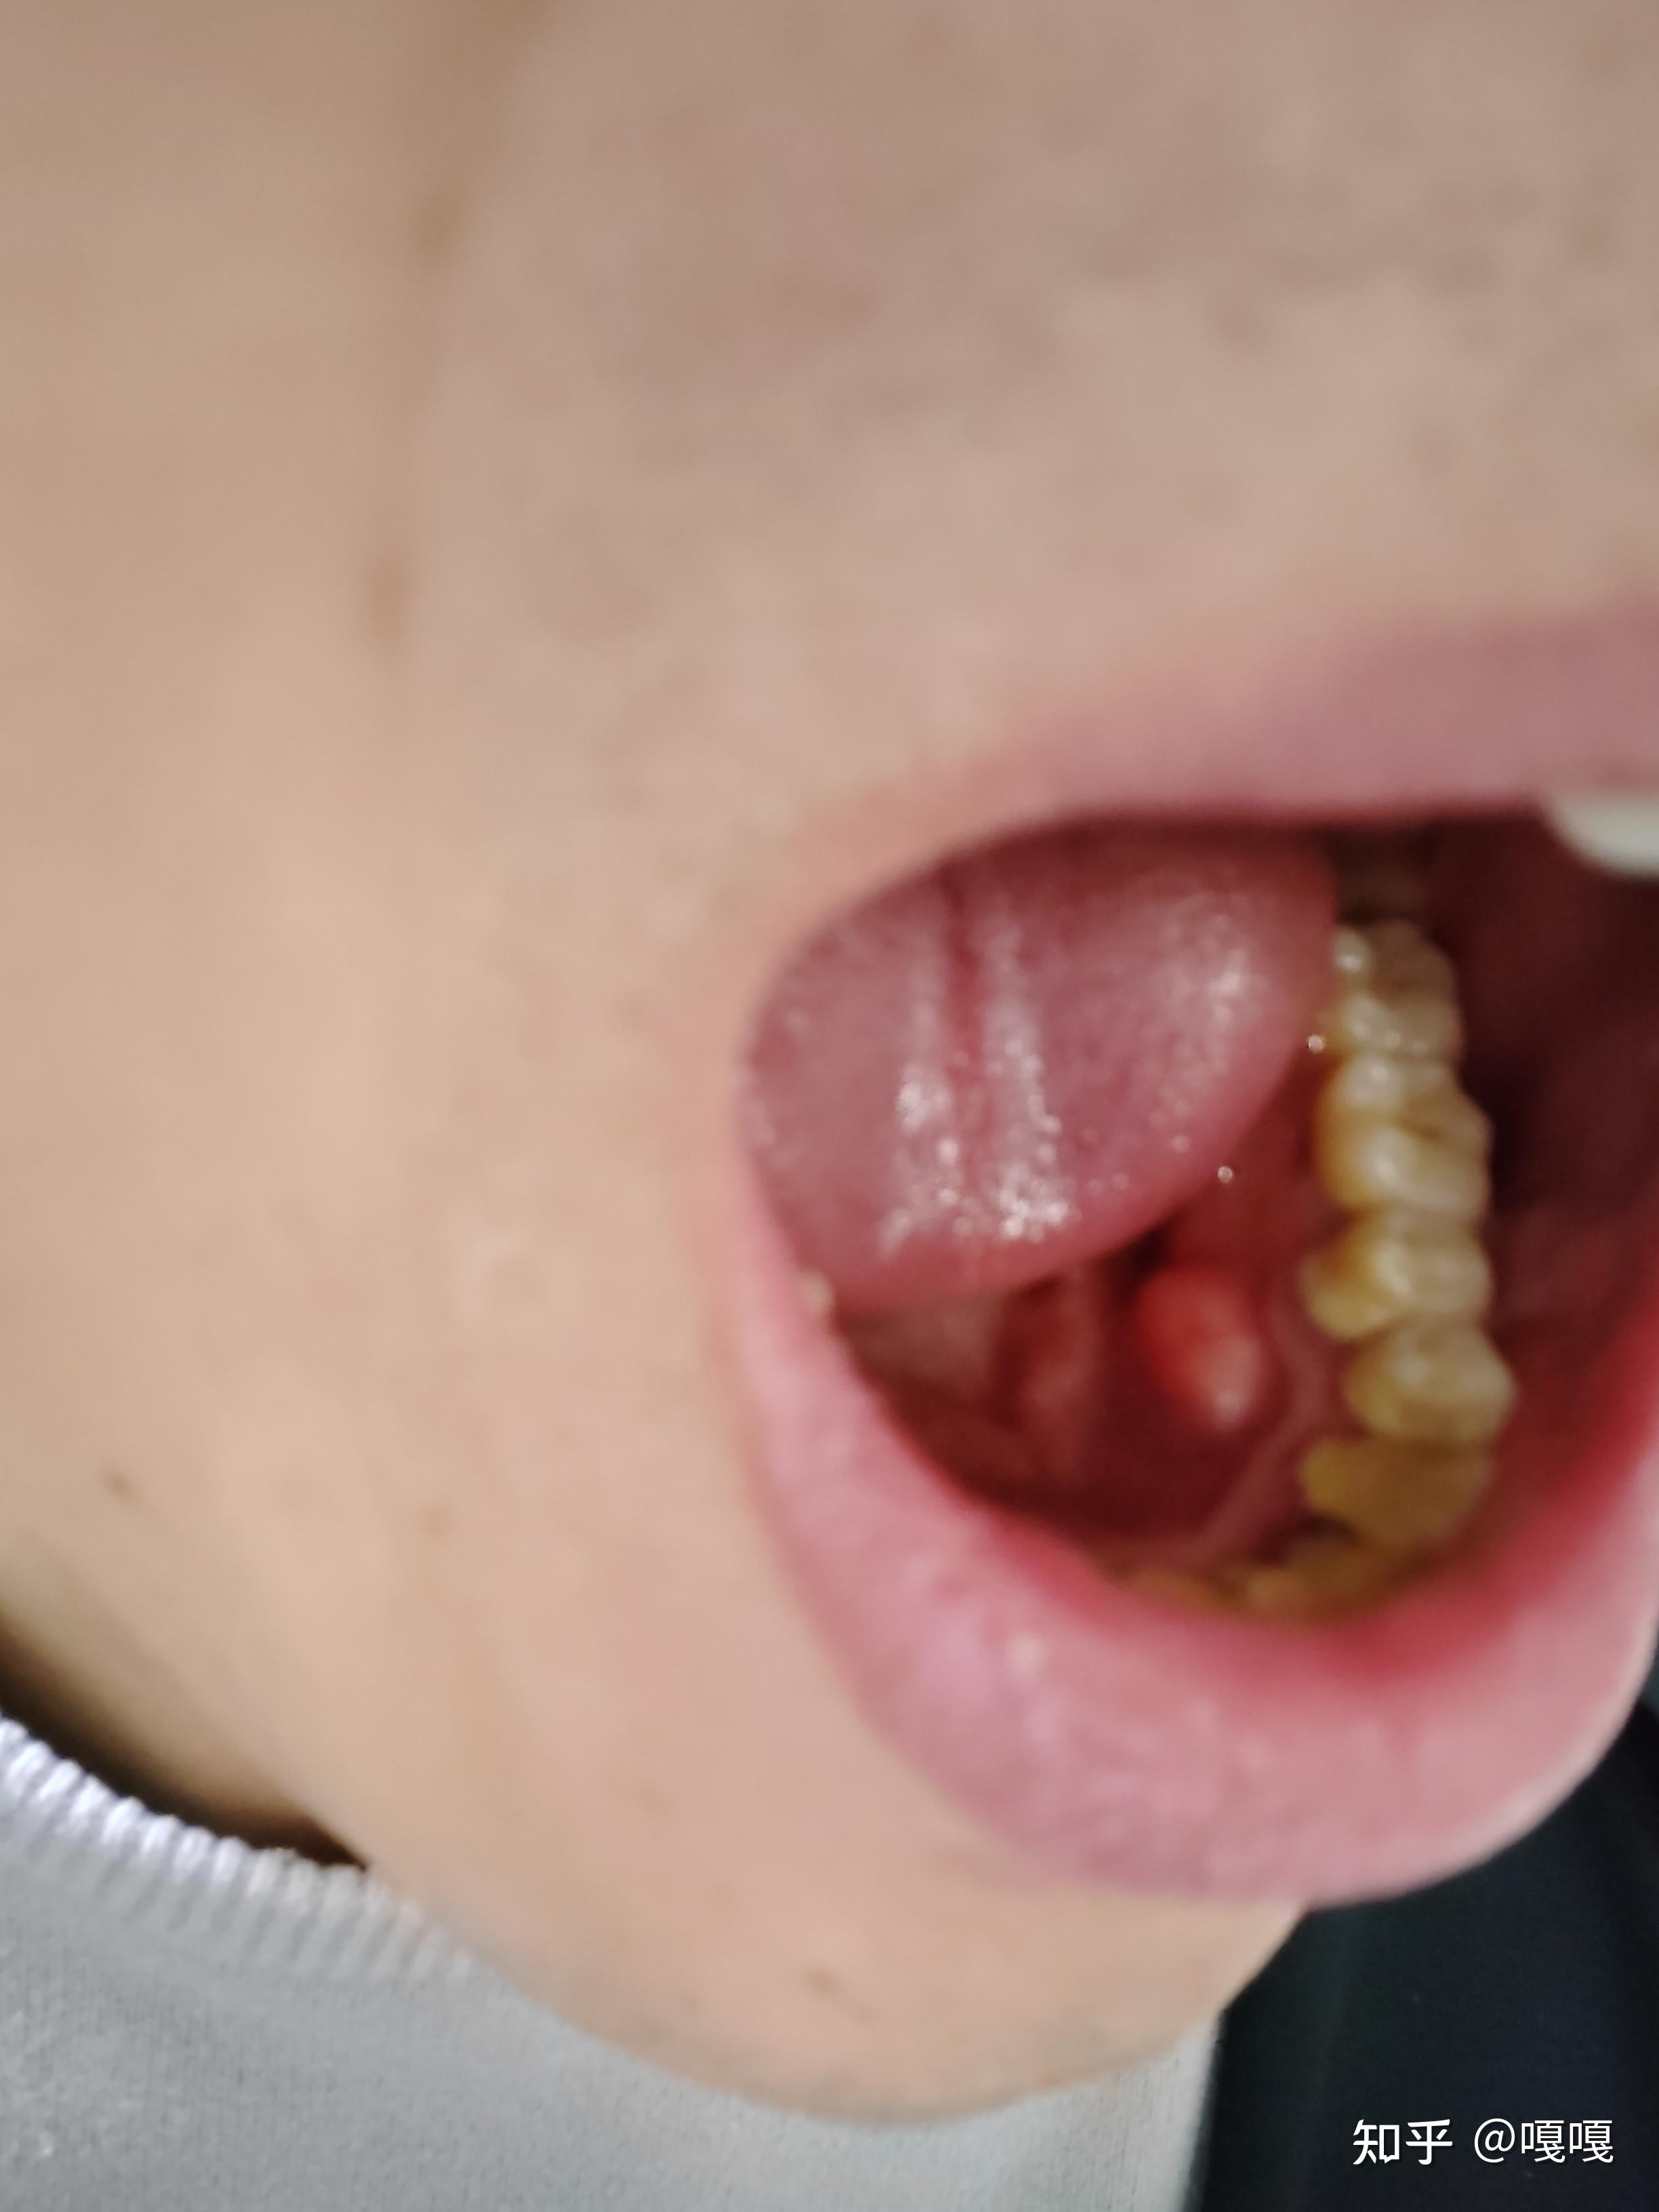 口腔下牙床内侧有一个硬的疙瘩,这是什么东西? 